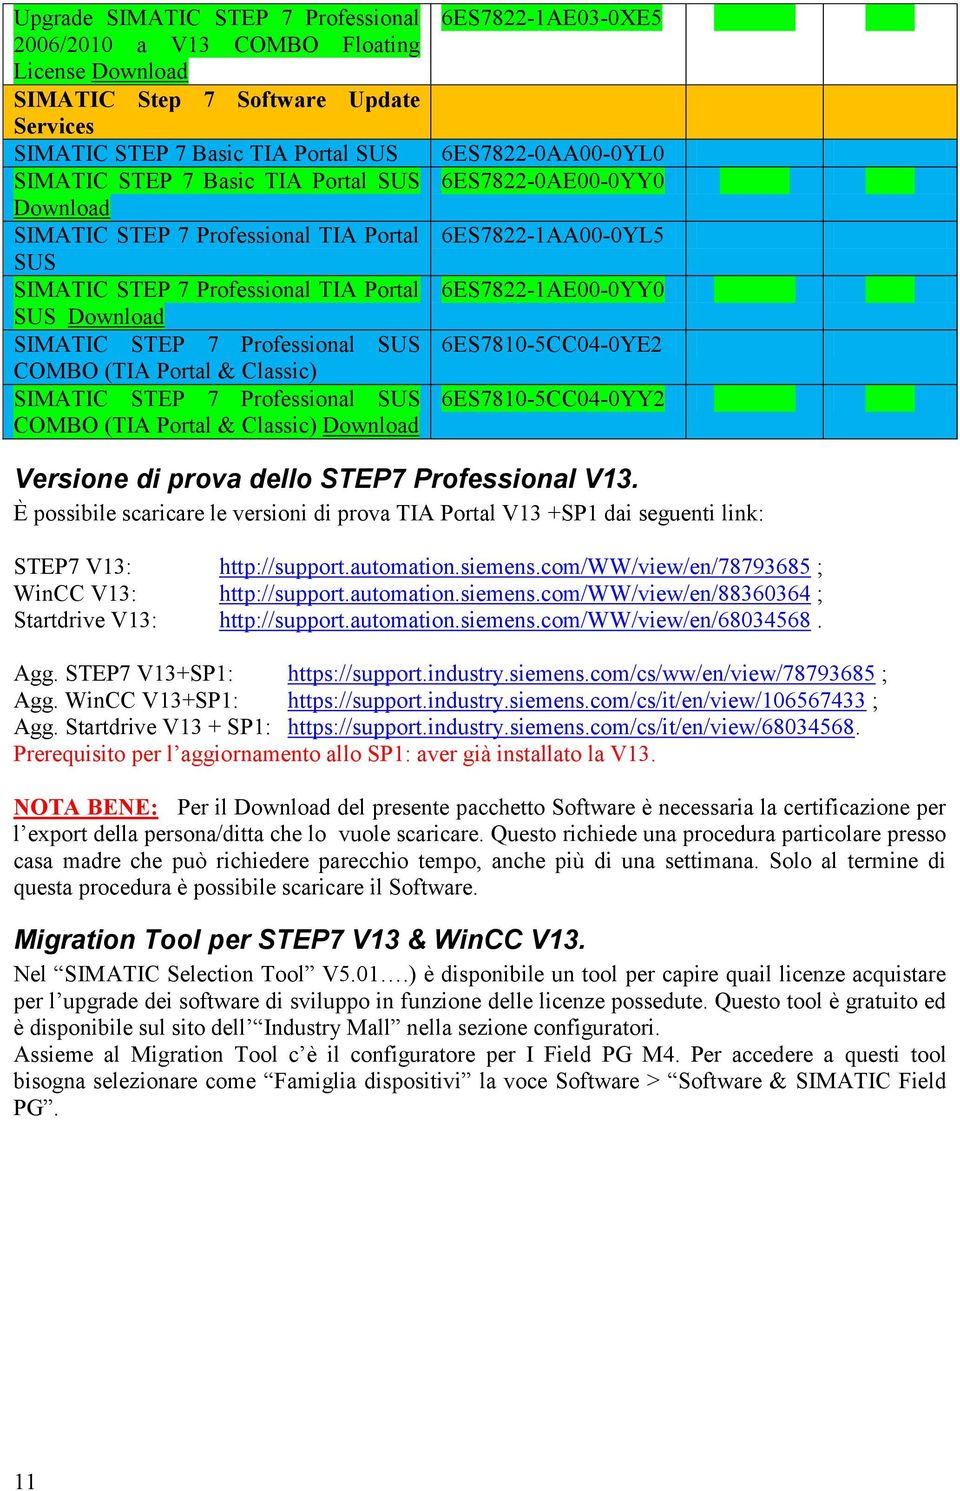 6ES7822-1AE03-0XE5 6ES7822-0AA00-0YL0 6ES7822-0AE00-0YY0 6ES7822-1AA00-0YL5 6ES7822-1AE00-0YY0 6ES7810-5CC04-0YE2 6ES7810-5CC04-0YY2 Versione di prova dello STEP7 Professional V13.